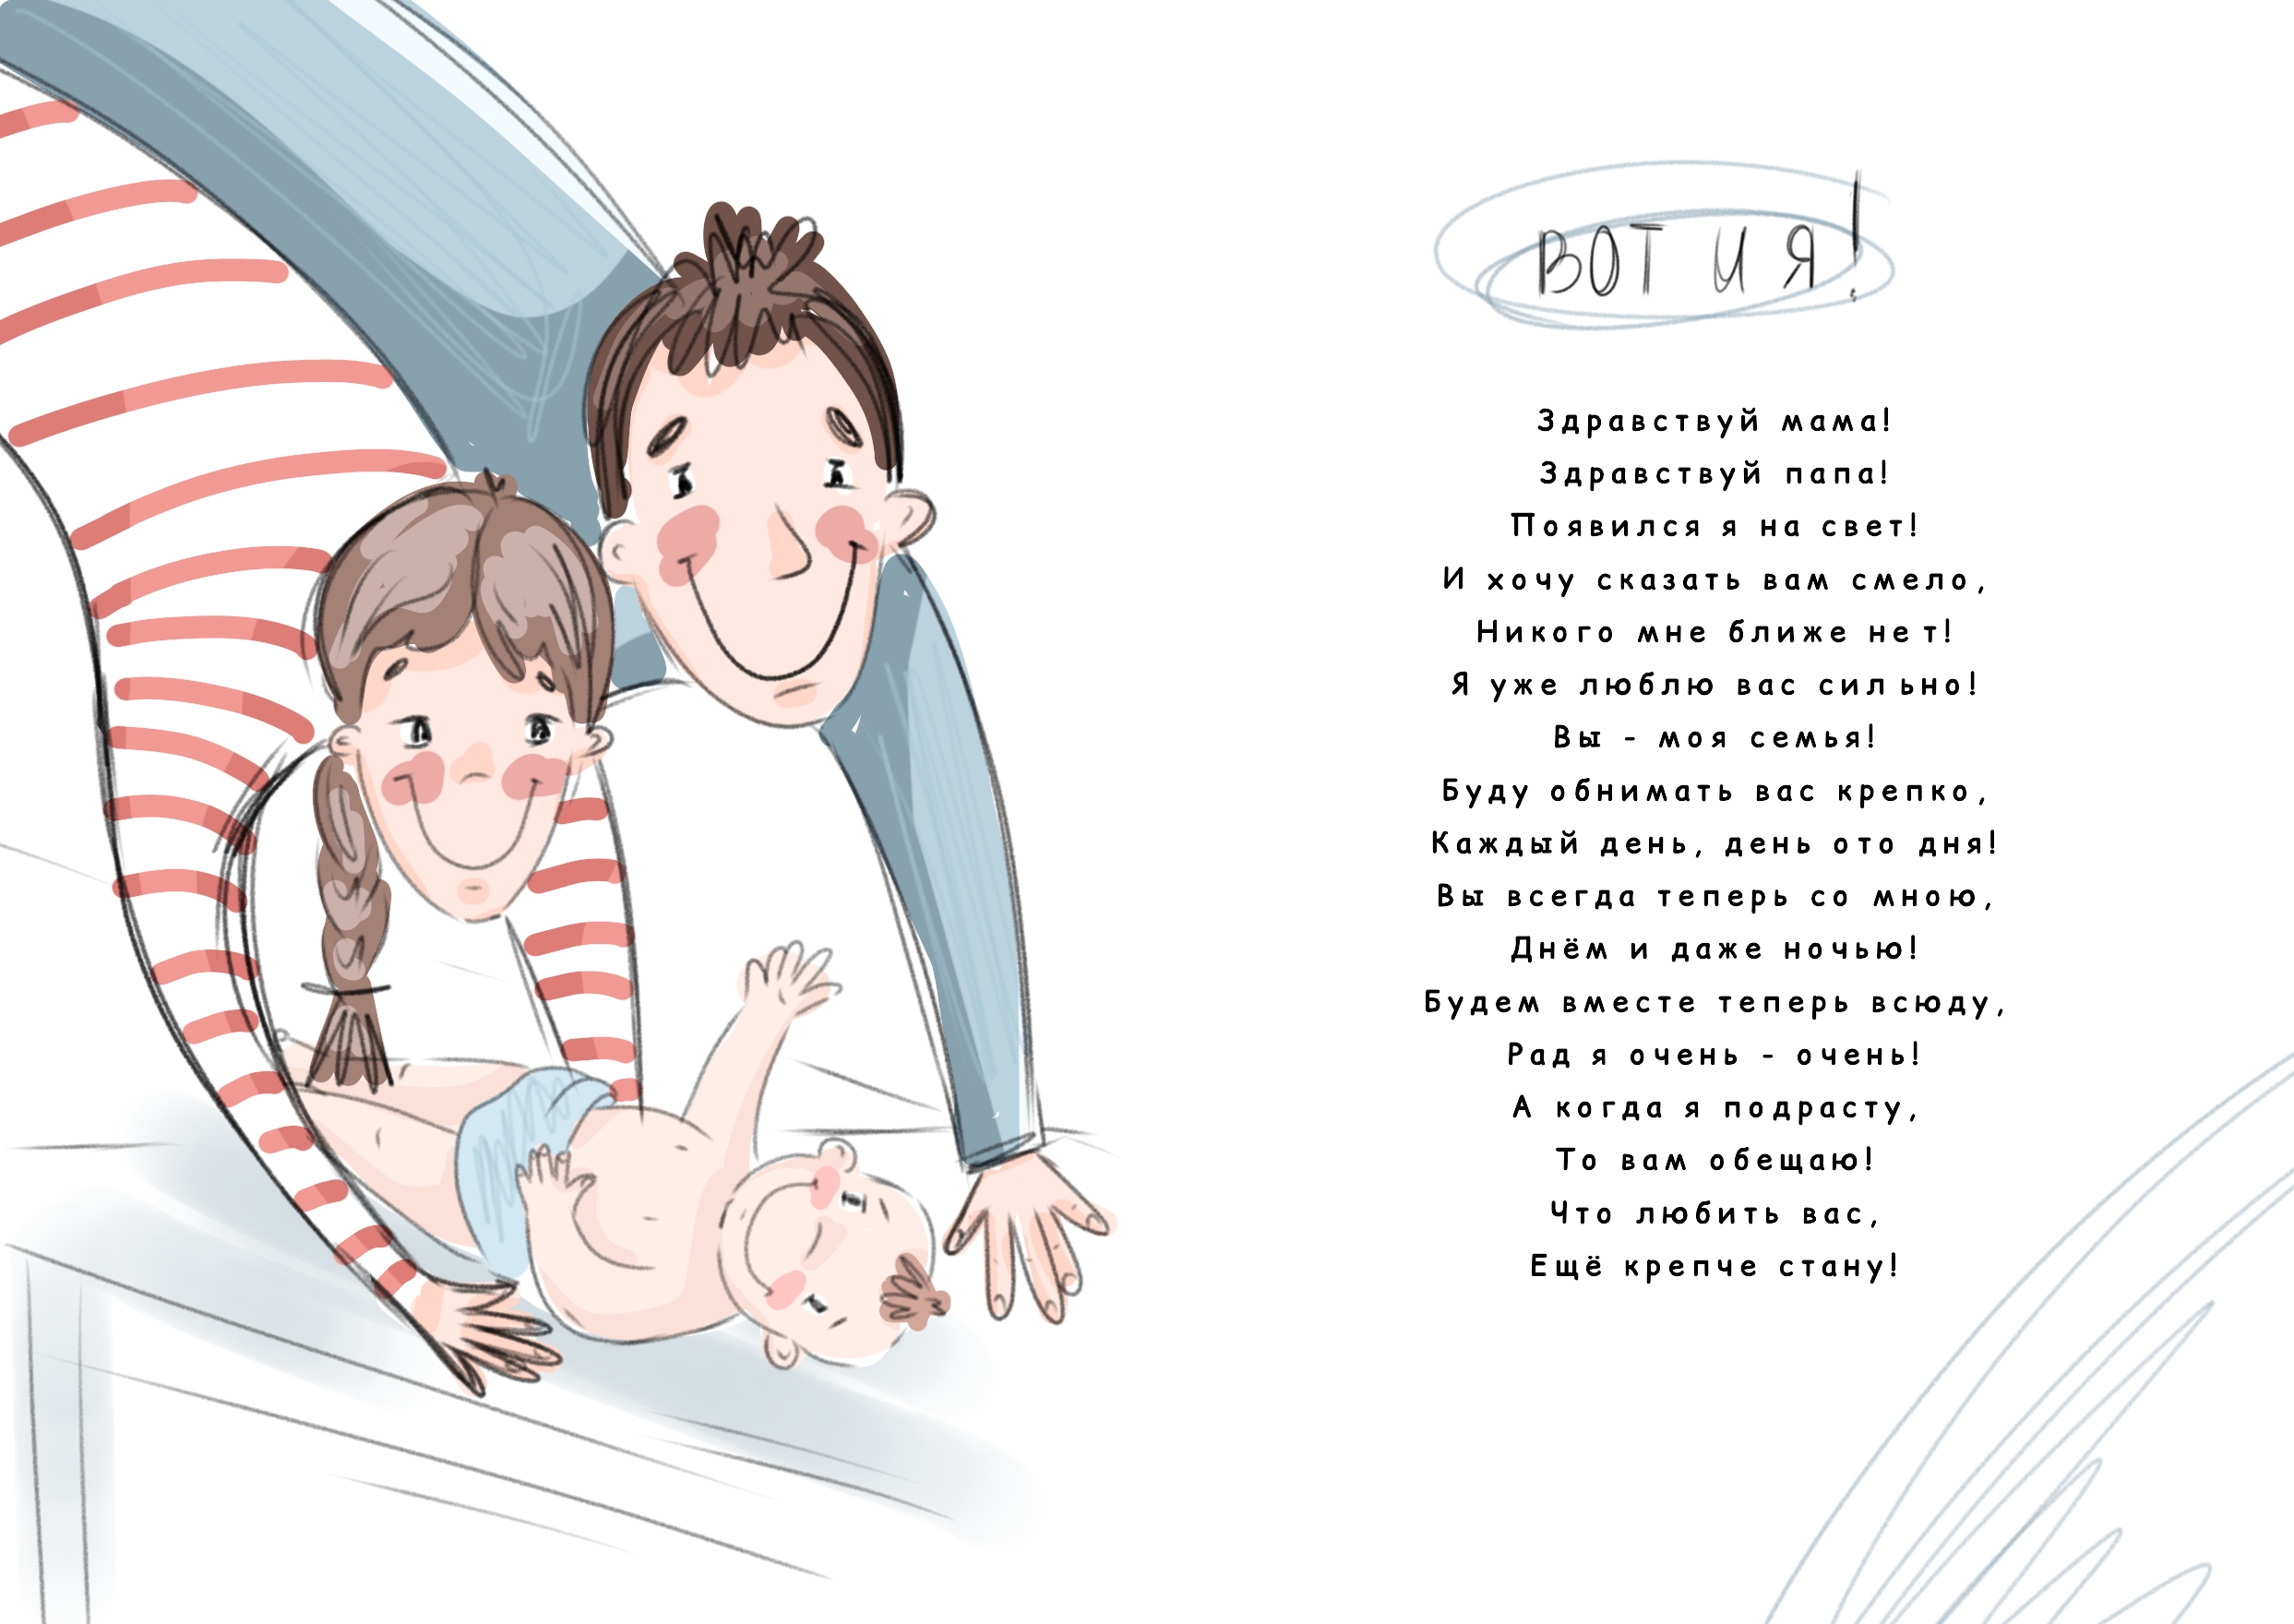 Illustrators.ru - сообщество русскоязычных иллюстраторов